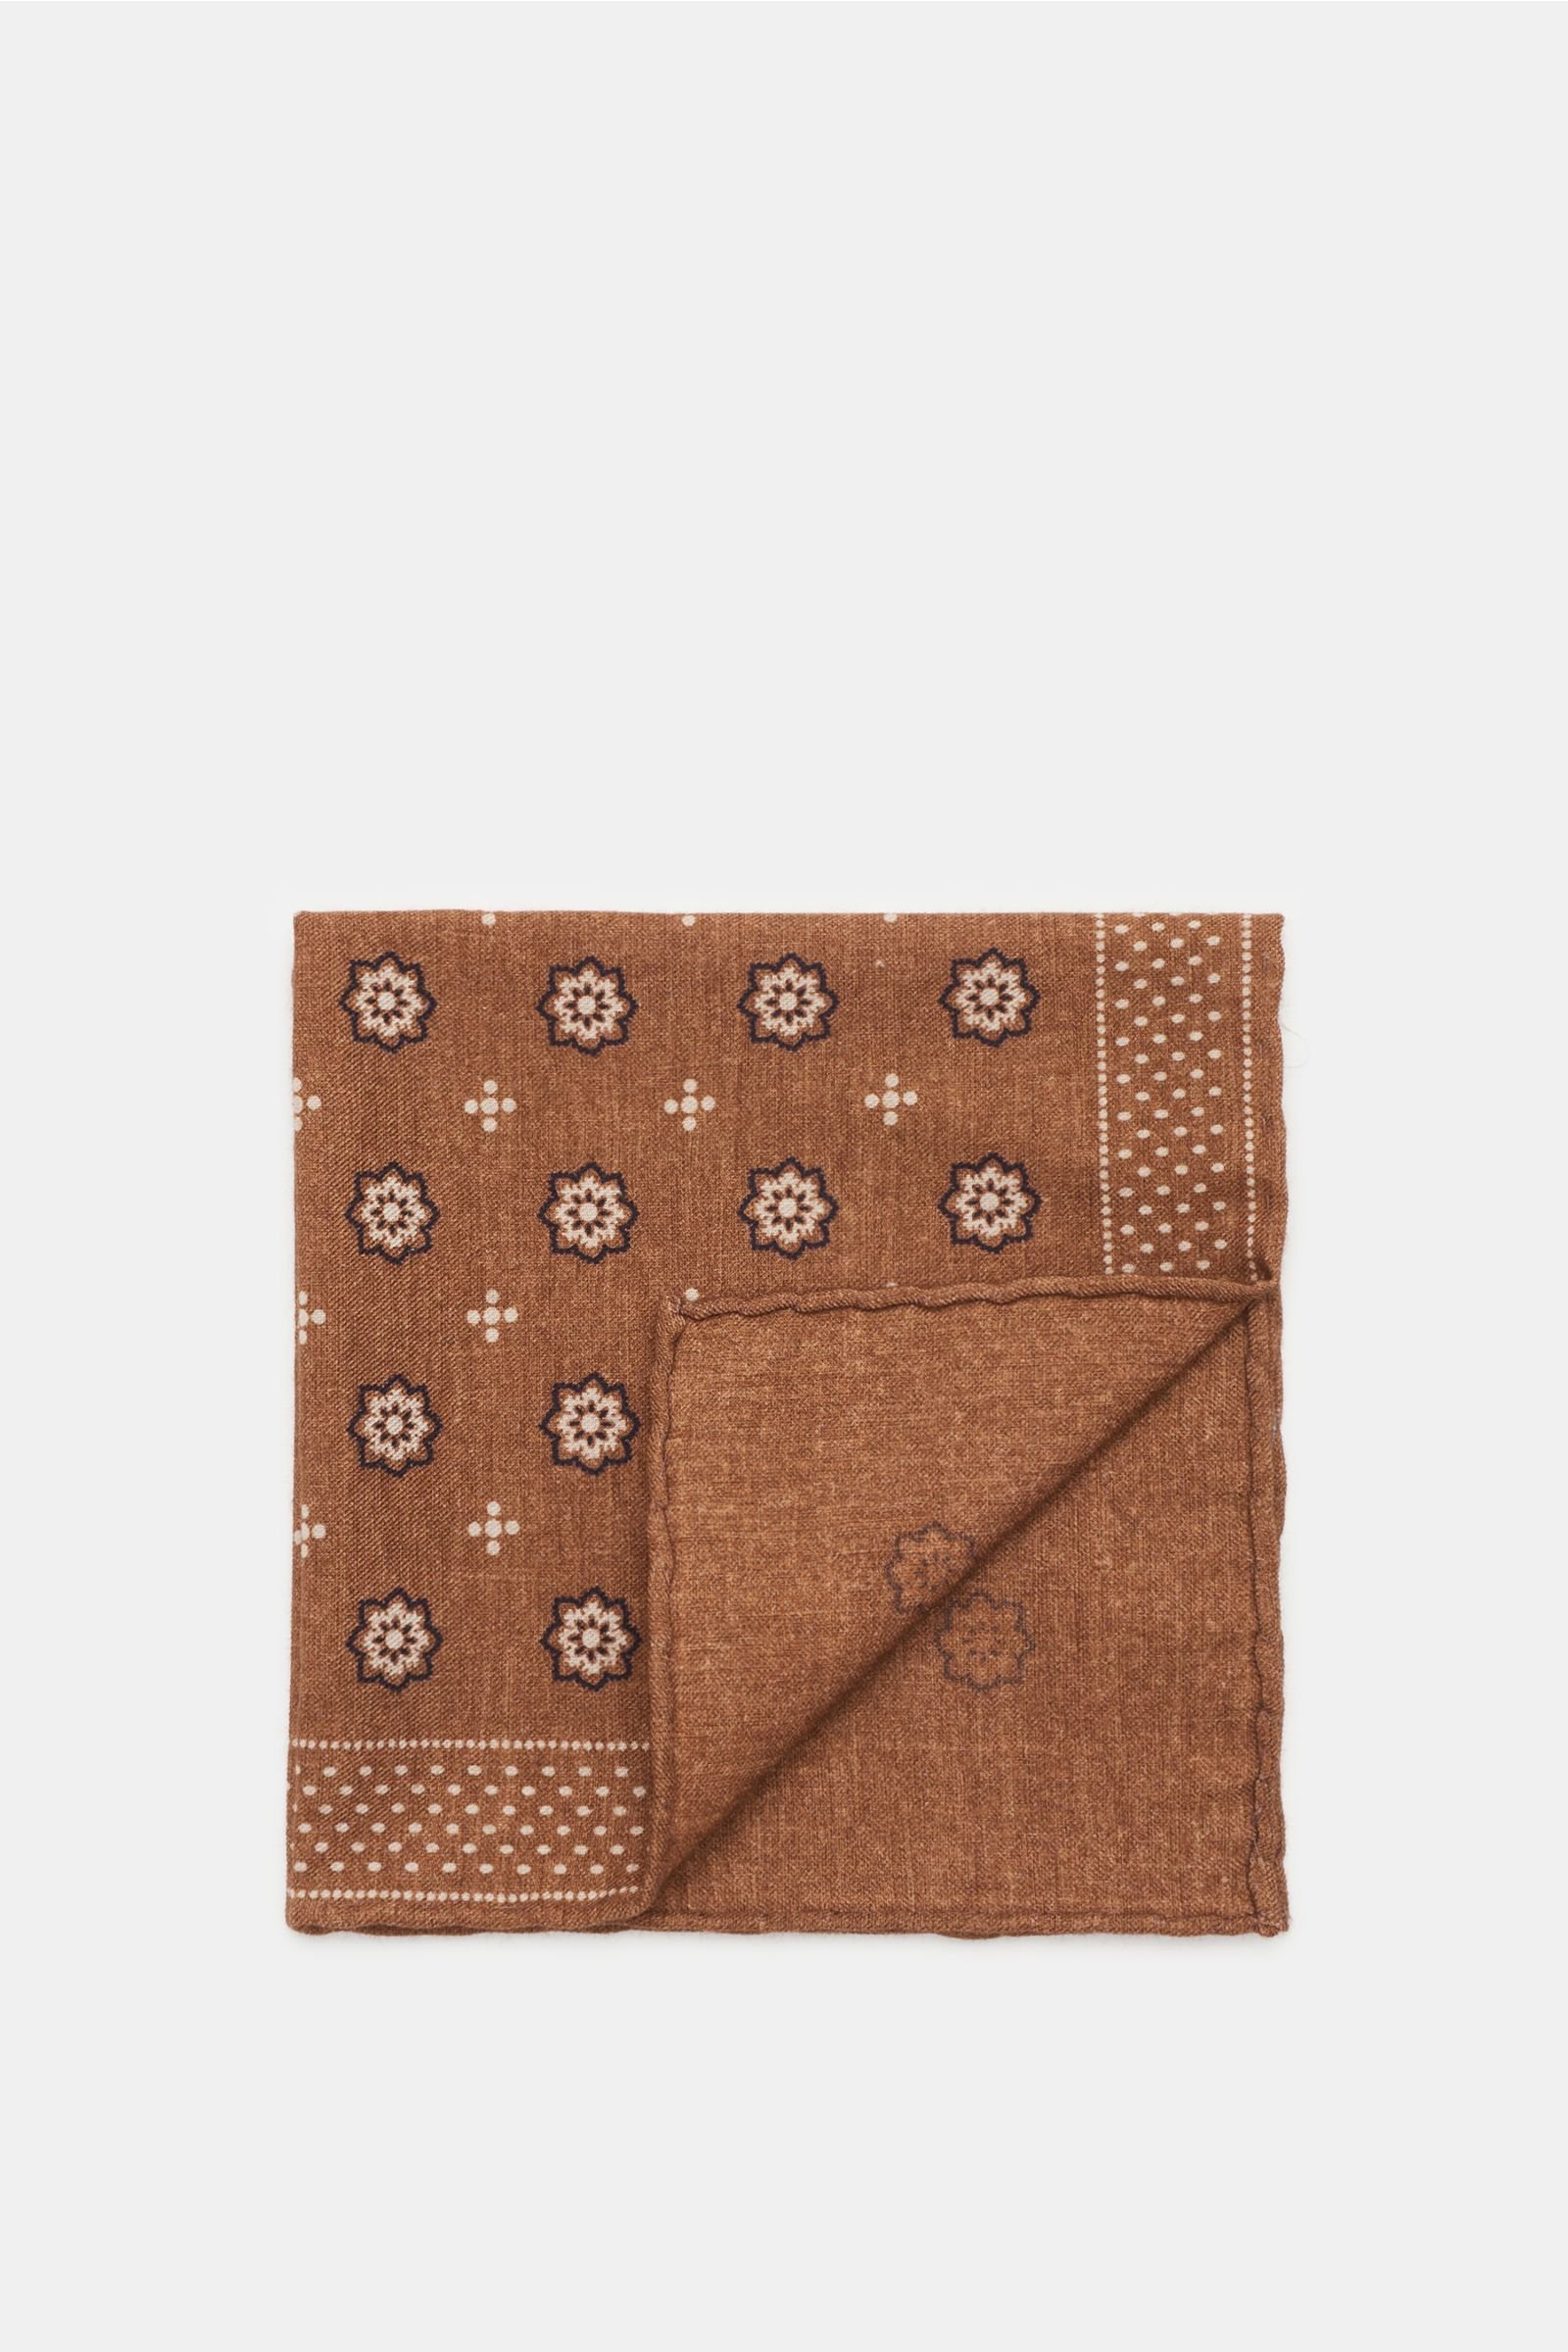 Pocket square brown/beige patterned